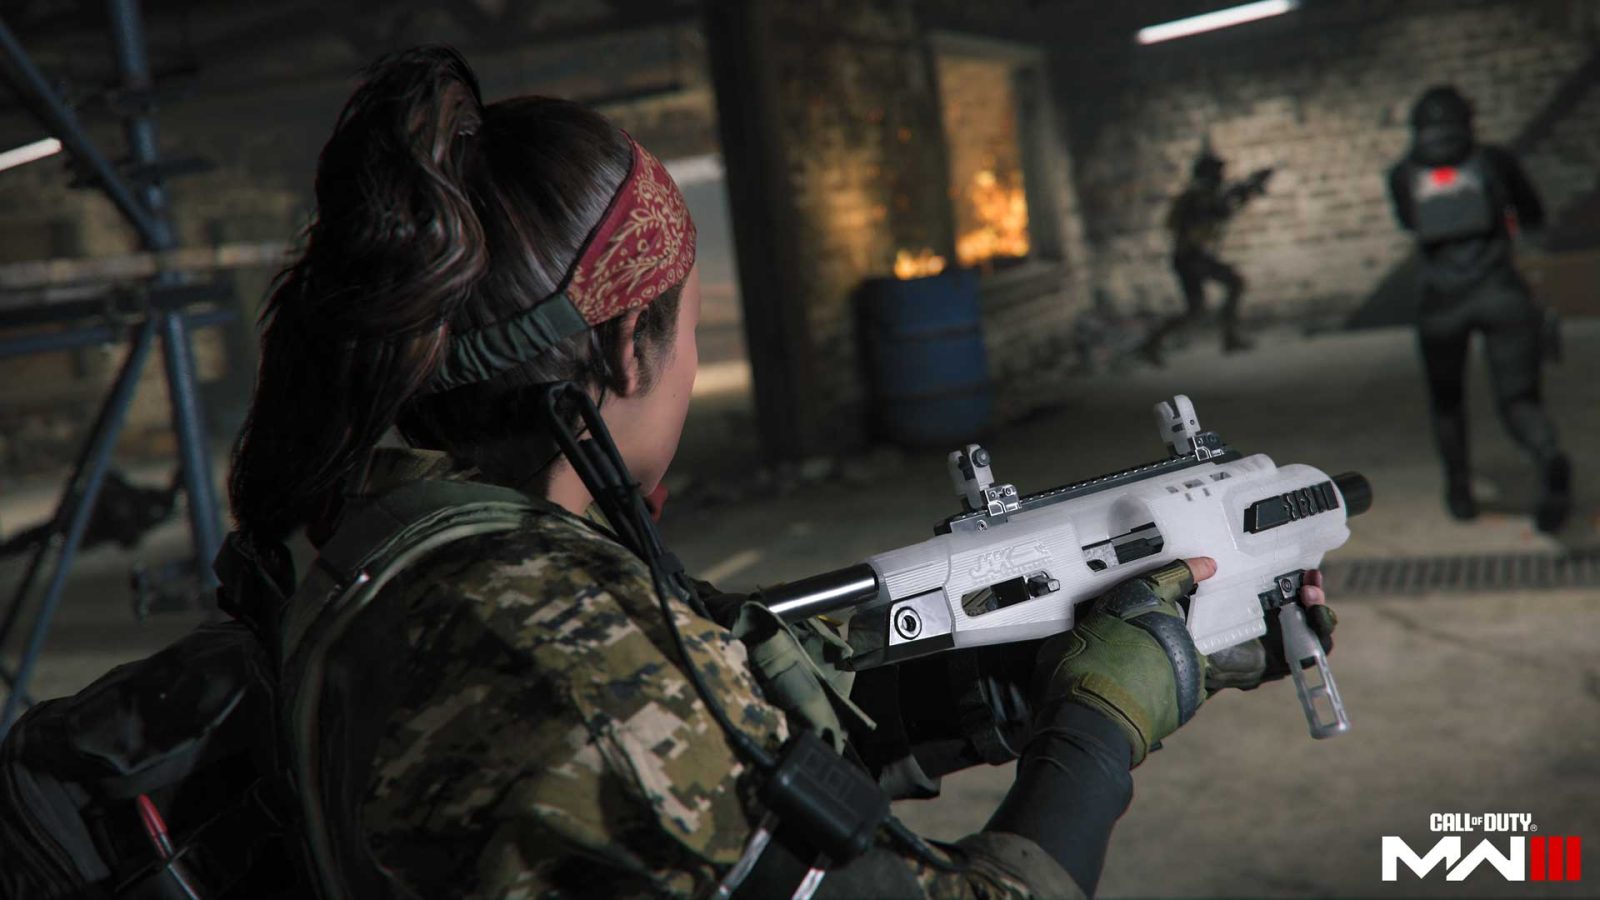 Buy Call of Duty: Modern Warfare III on PlayStation 4